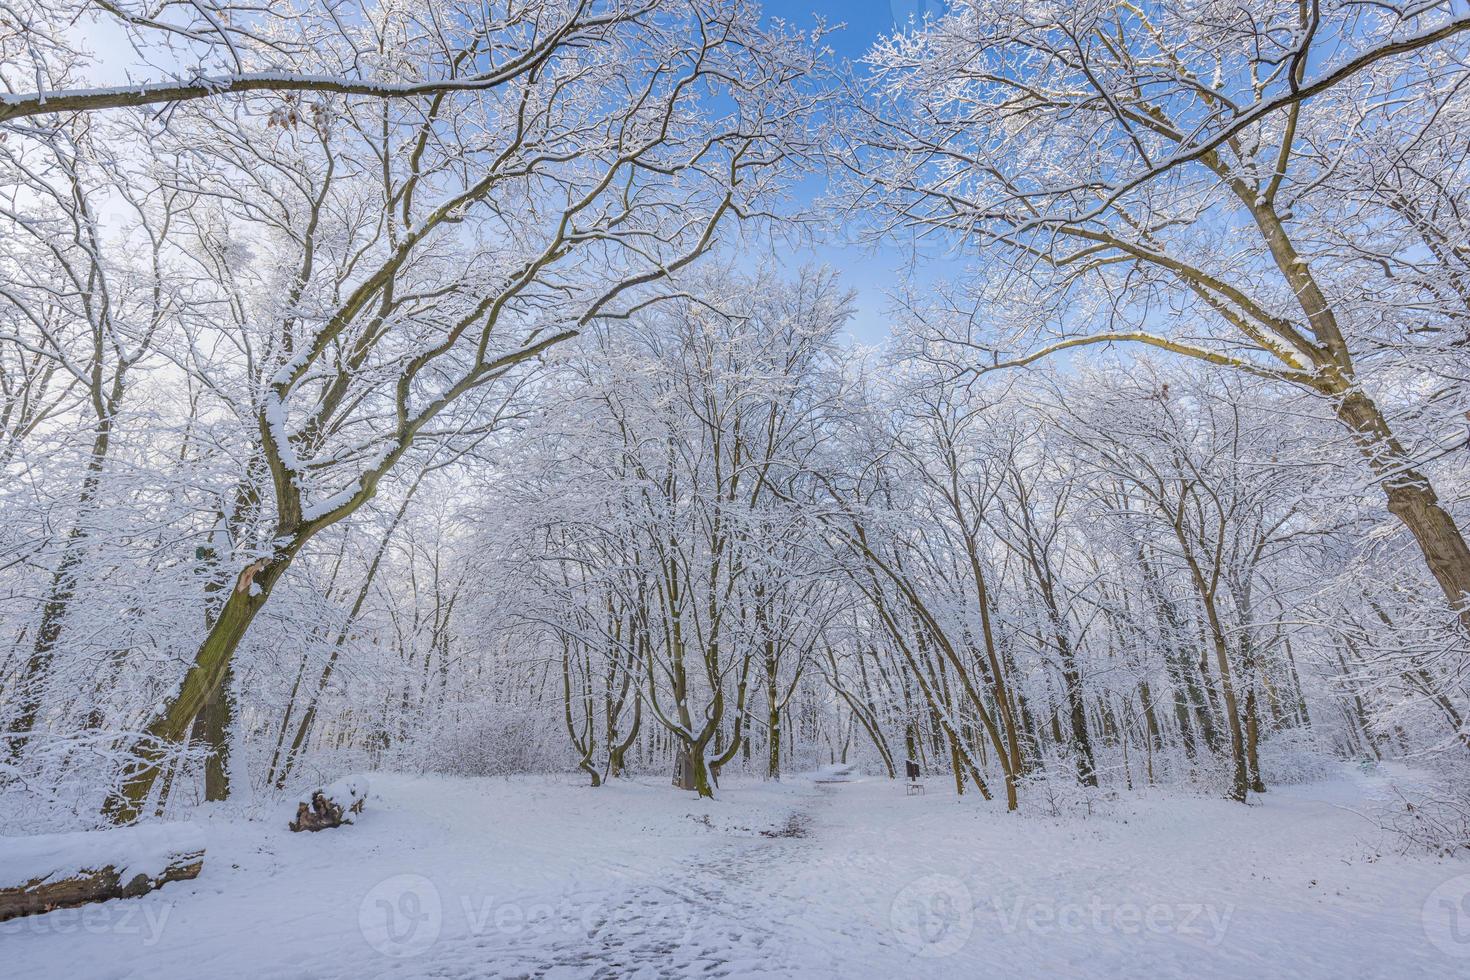 Winterlandschaft mit schneebedecktem Wald. sonniger tag, abenteuer wandern tief im wald, pfad oder weg entspannende landschaftlich reizvolle aussicht. saisonale Winternaturlandschaft, gefrorene Wälder, ruhige Ruhe foto